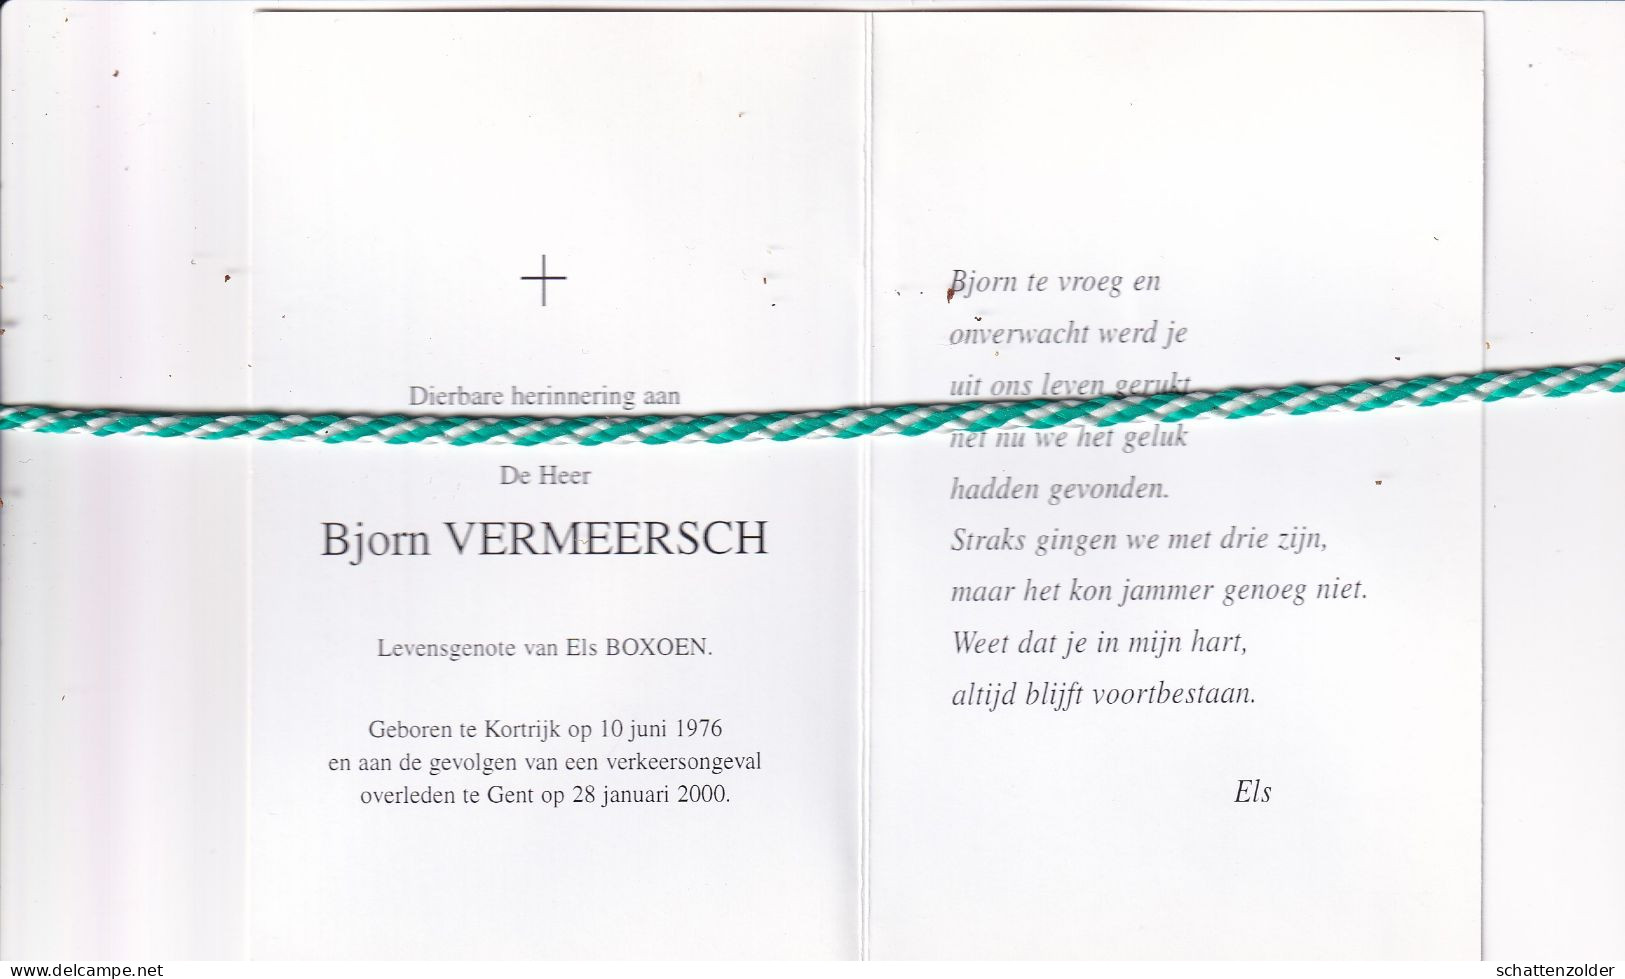 Bjorn Vermeersch-Boxoen, Kortrijk 1976, Gent 2000. Foto - Esquela